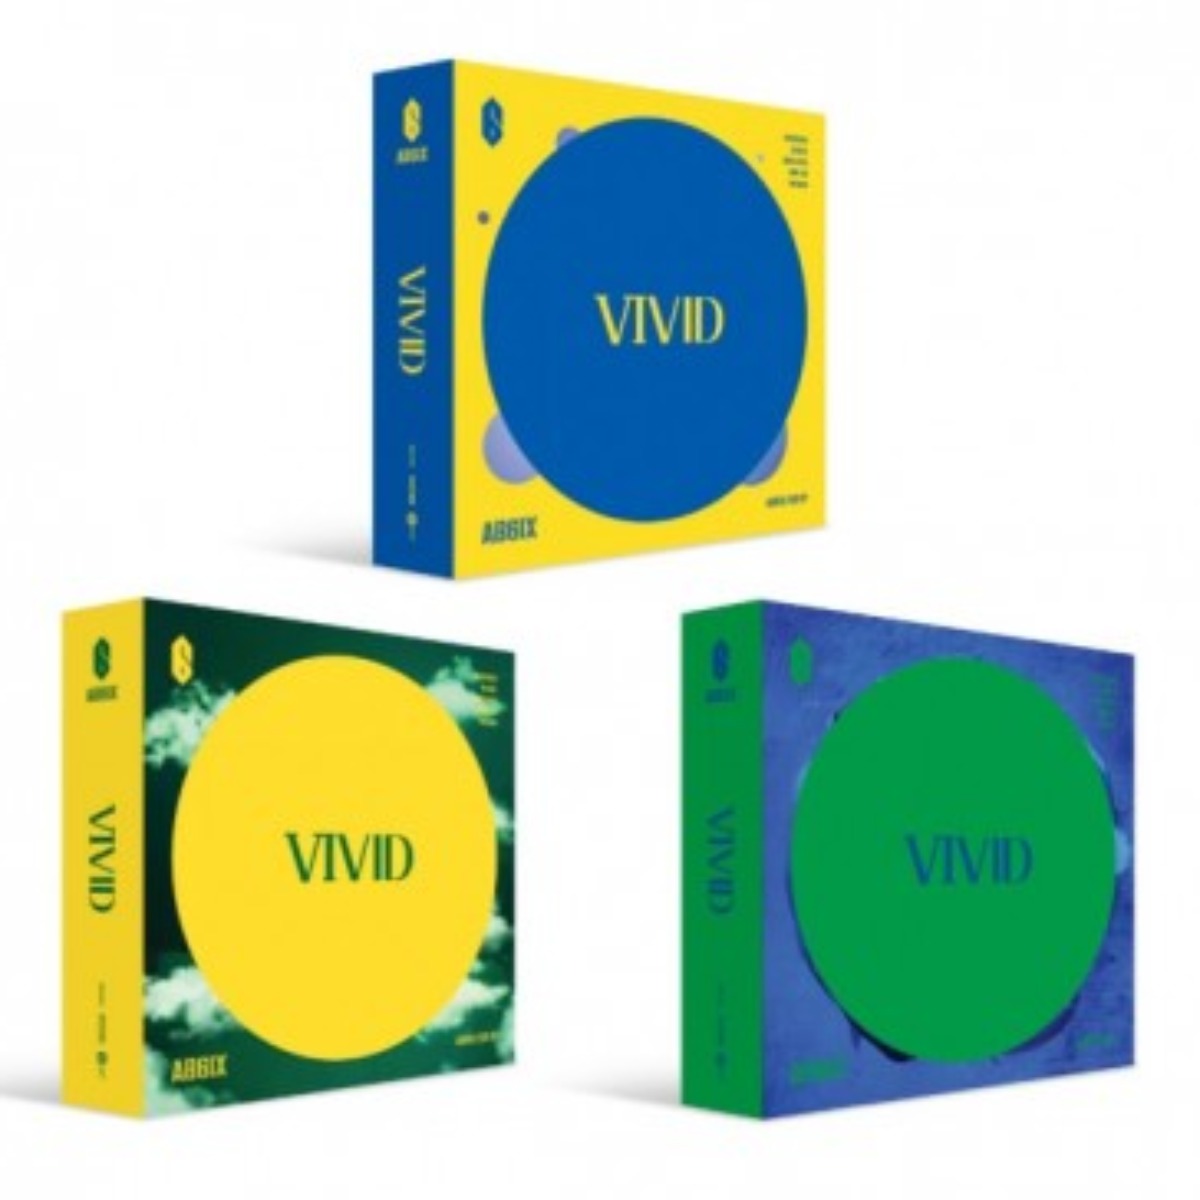 AB6IX EP Album Vol. 2 - VIVID